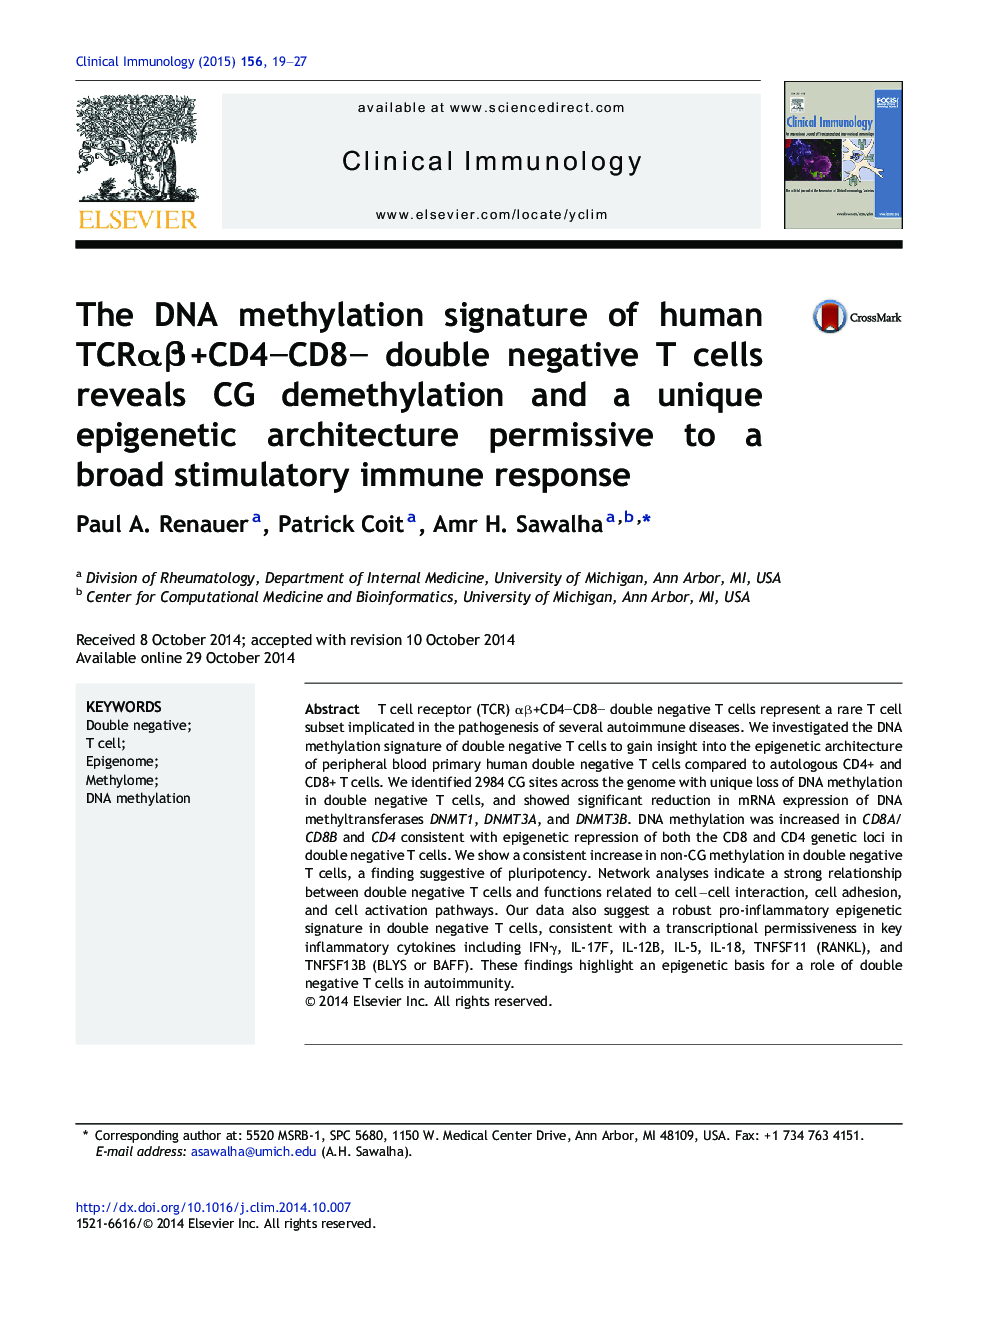 The DNA methylation signature of human TCRÎ±Î²+CD4âCD8â double negative T cells reveals CG demethylation and a unique epigenetic architecture permissive to a broad stimulatory immune response